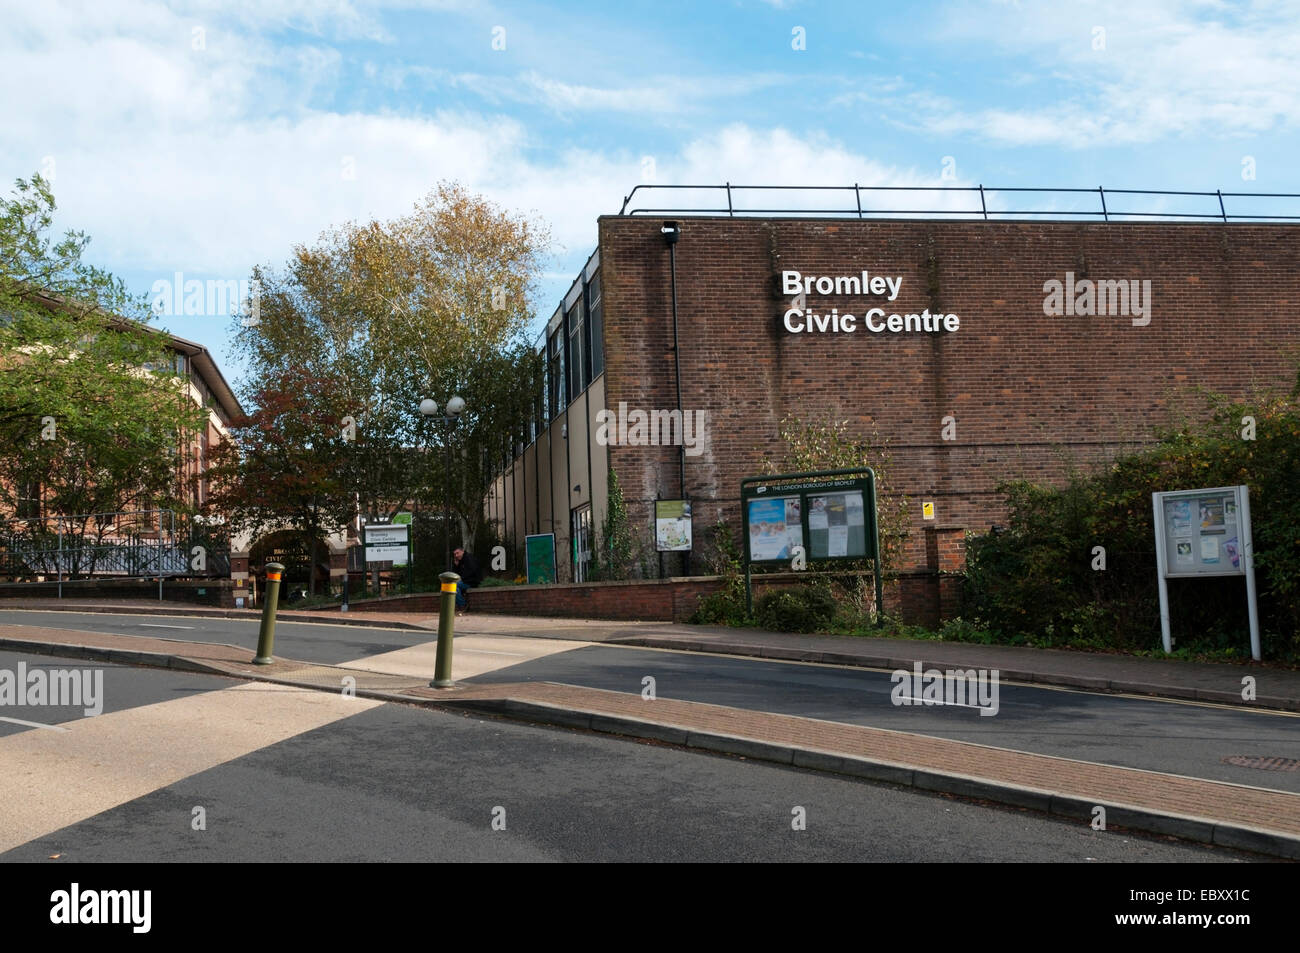 Bromley Civic Centre in Südlondon. Stockfoto